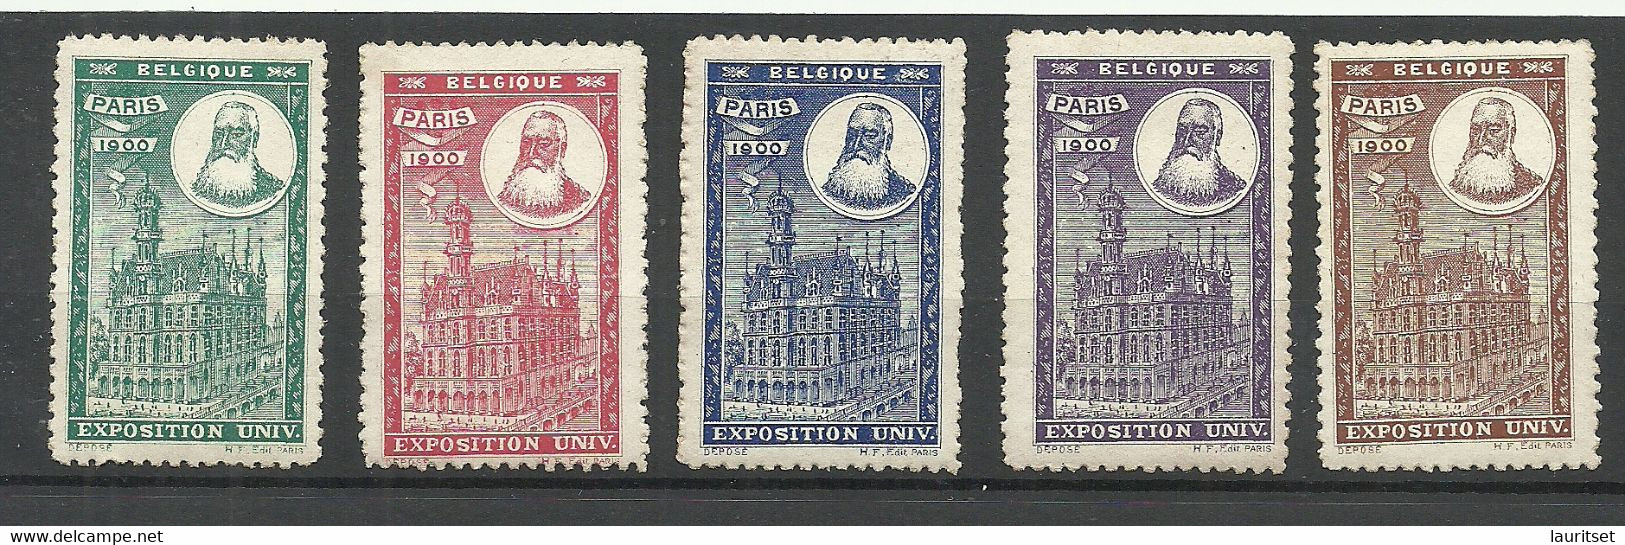 France 1900 EXPOSITION UNIVERSELLE Vignetten Poster Stamps Pavillon De Belgique Belgium * - 1900 – Parigi (Francia)